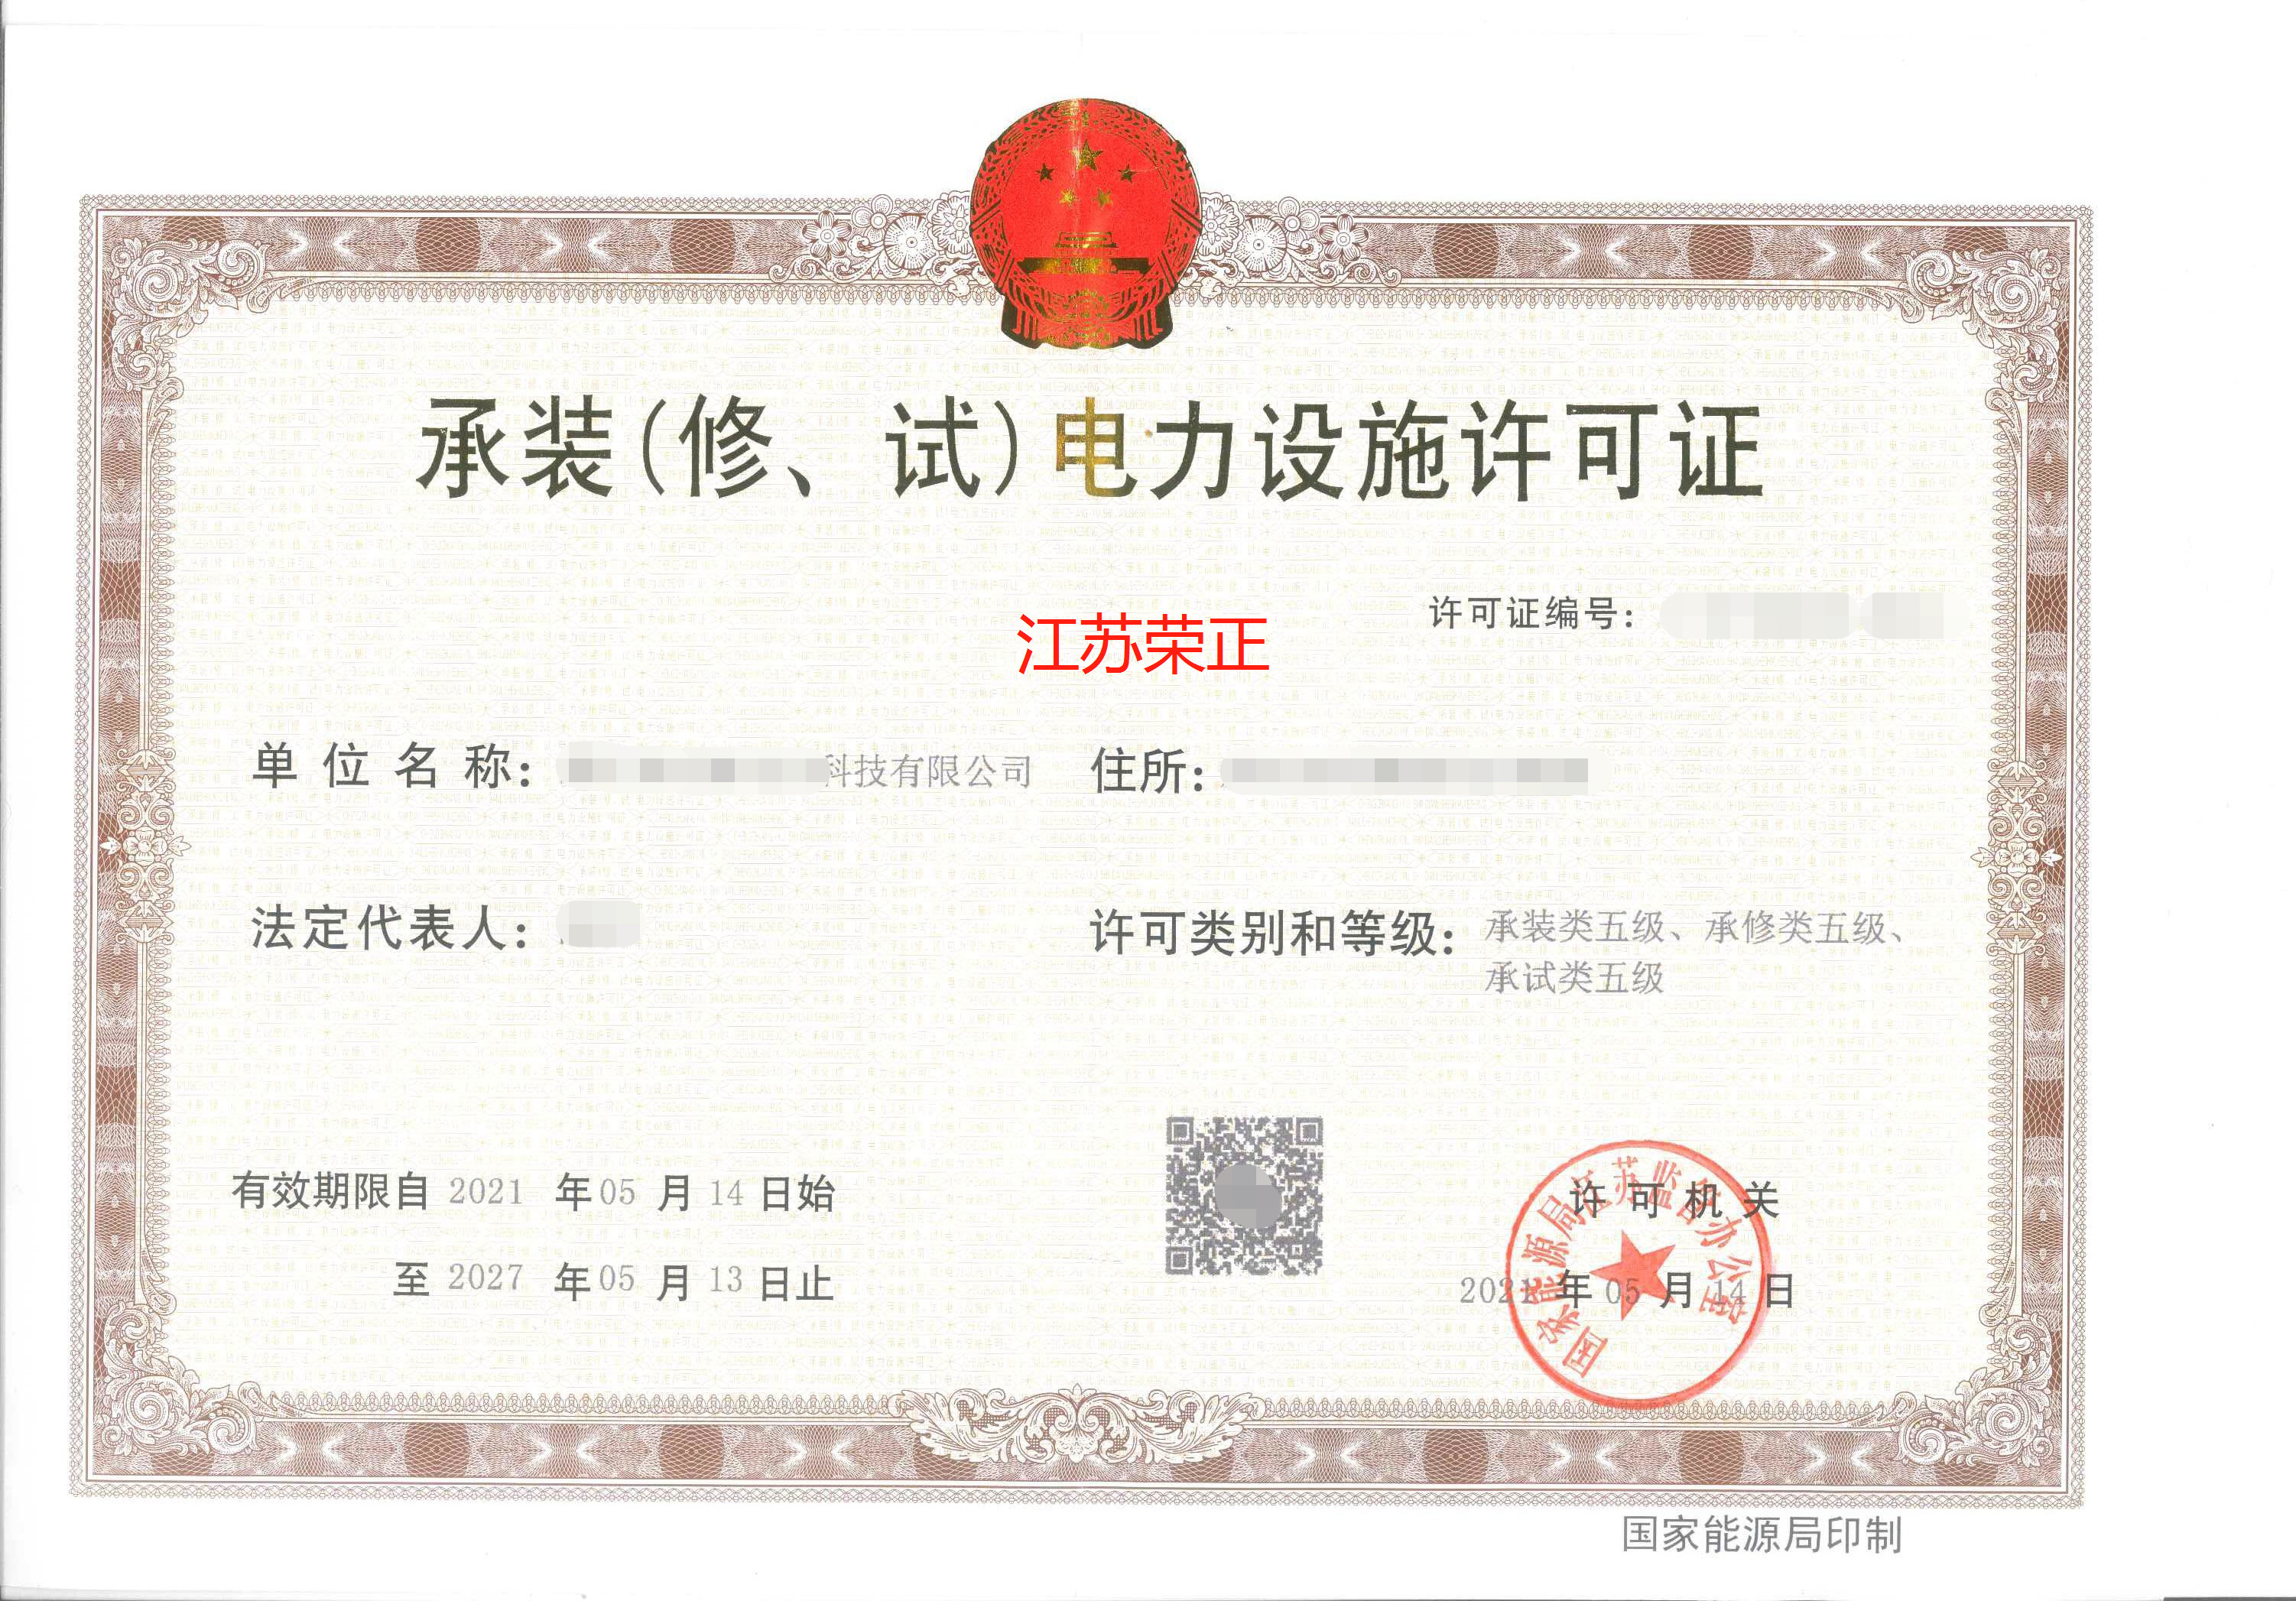 【案例分享】江苏省南京市承装（修、试）电力设施许可证